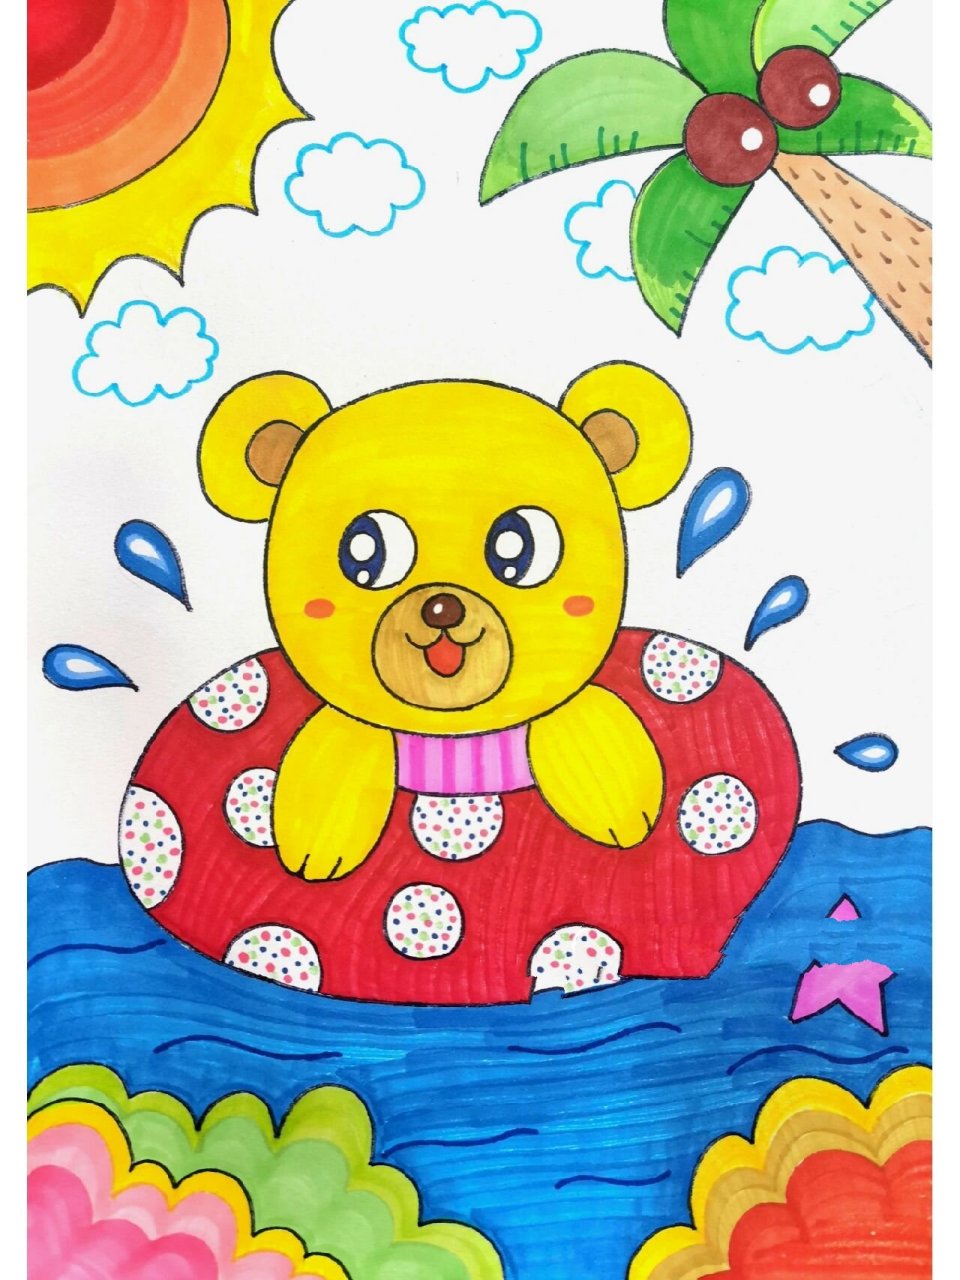 简单夏日儿童画 适合幼儿园的小朋友～后面有线稿图 原创作品临摹请